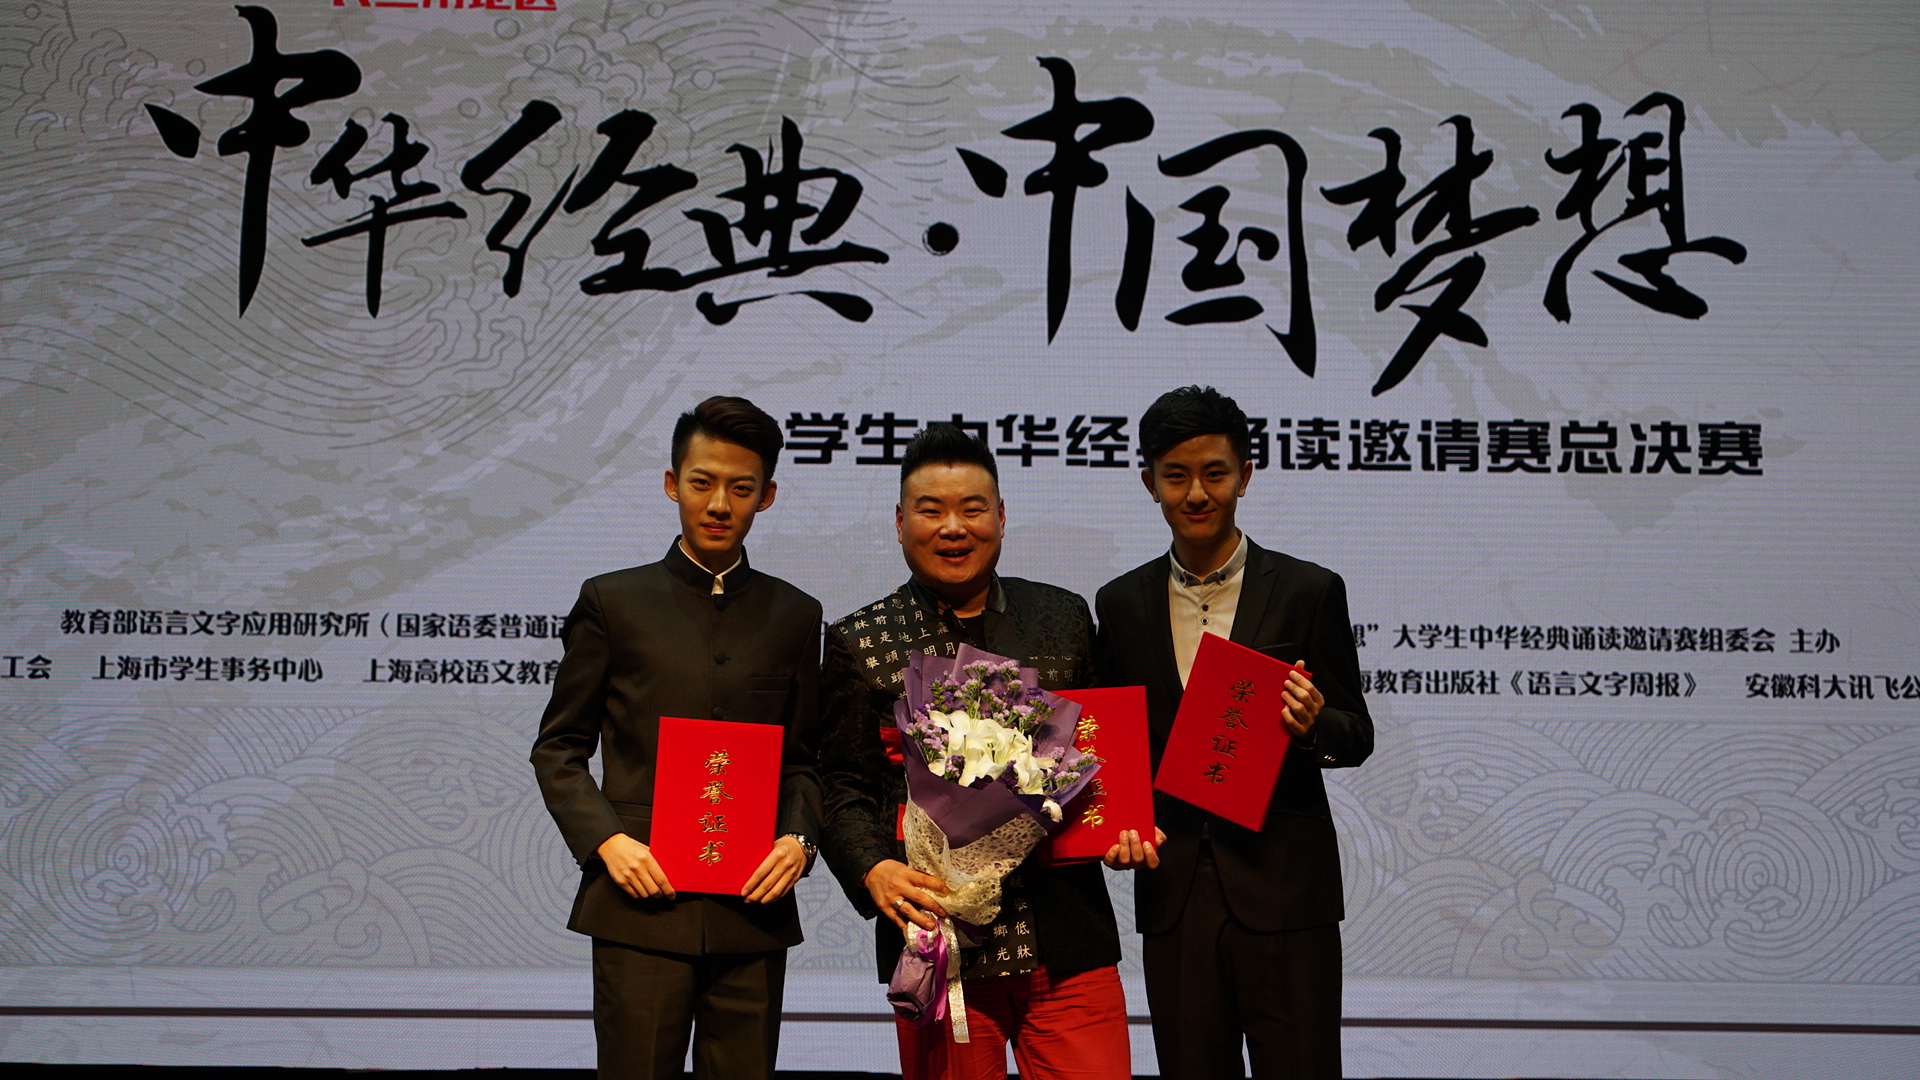 获奖学生肖云镝（左）、张桢领（右）和指导教师马力总决赛后合影留念